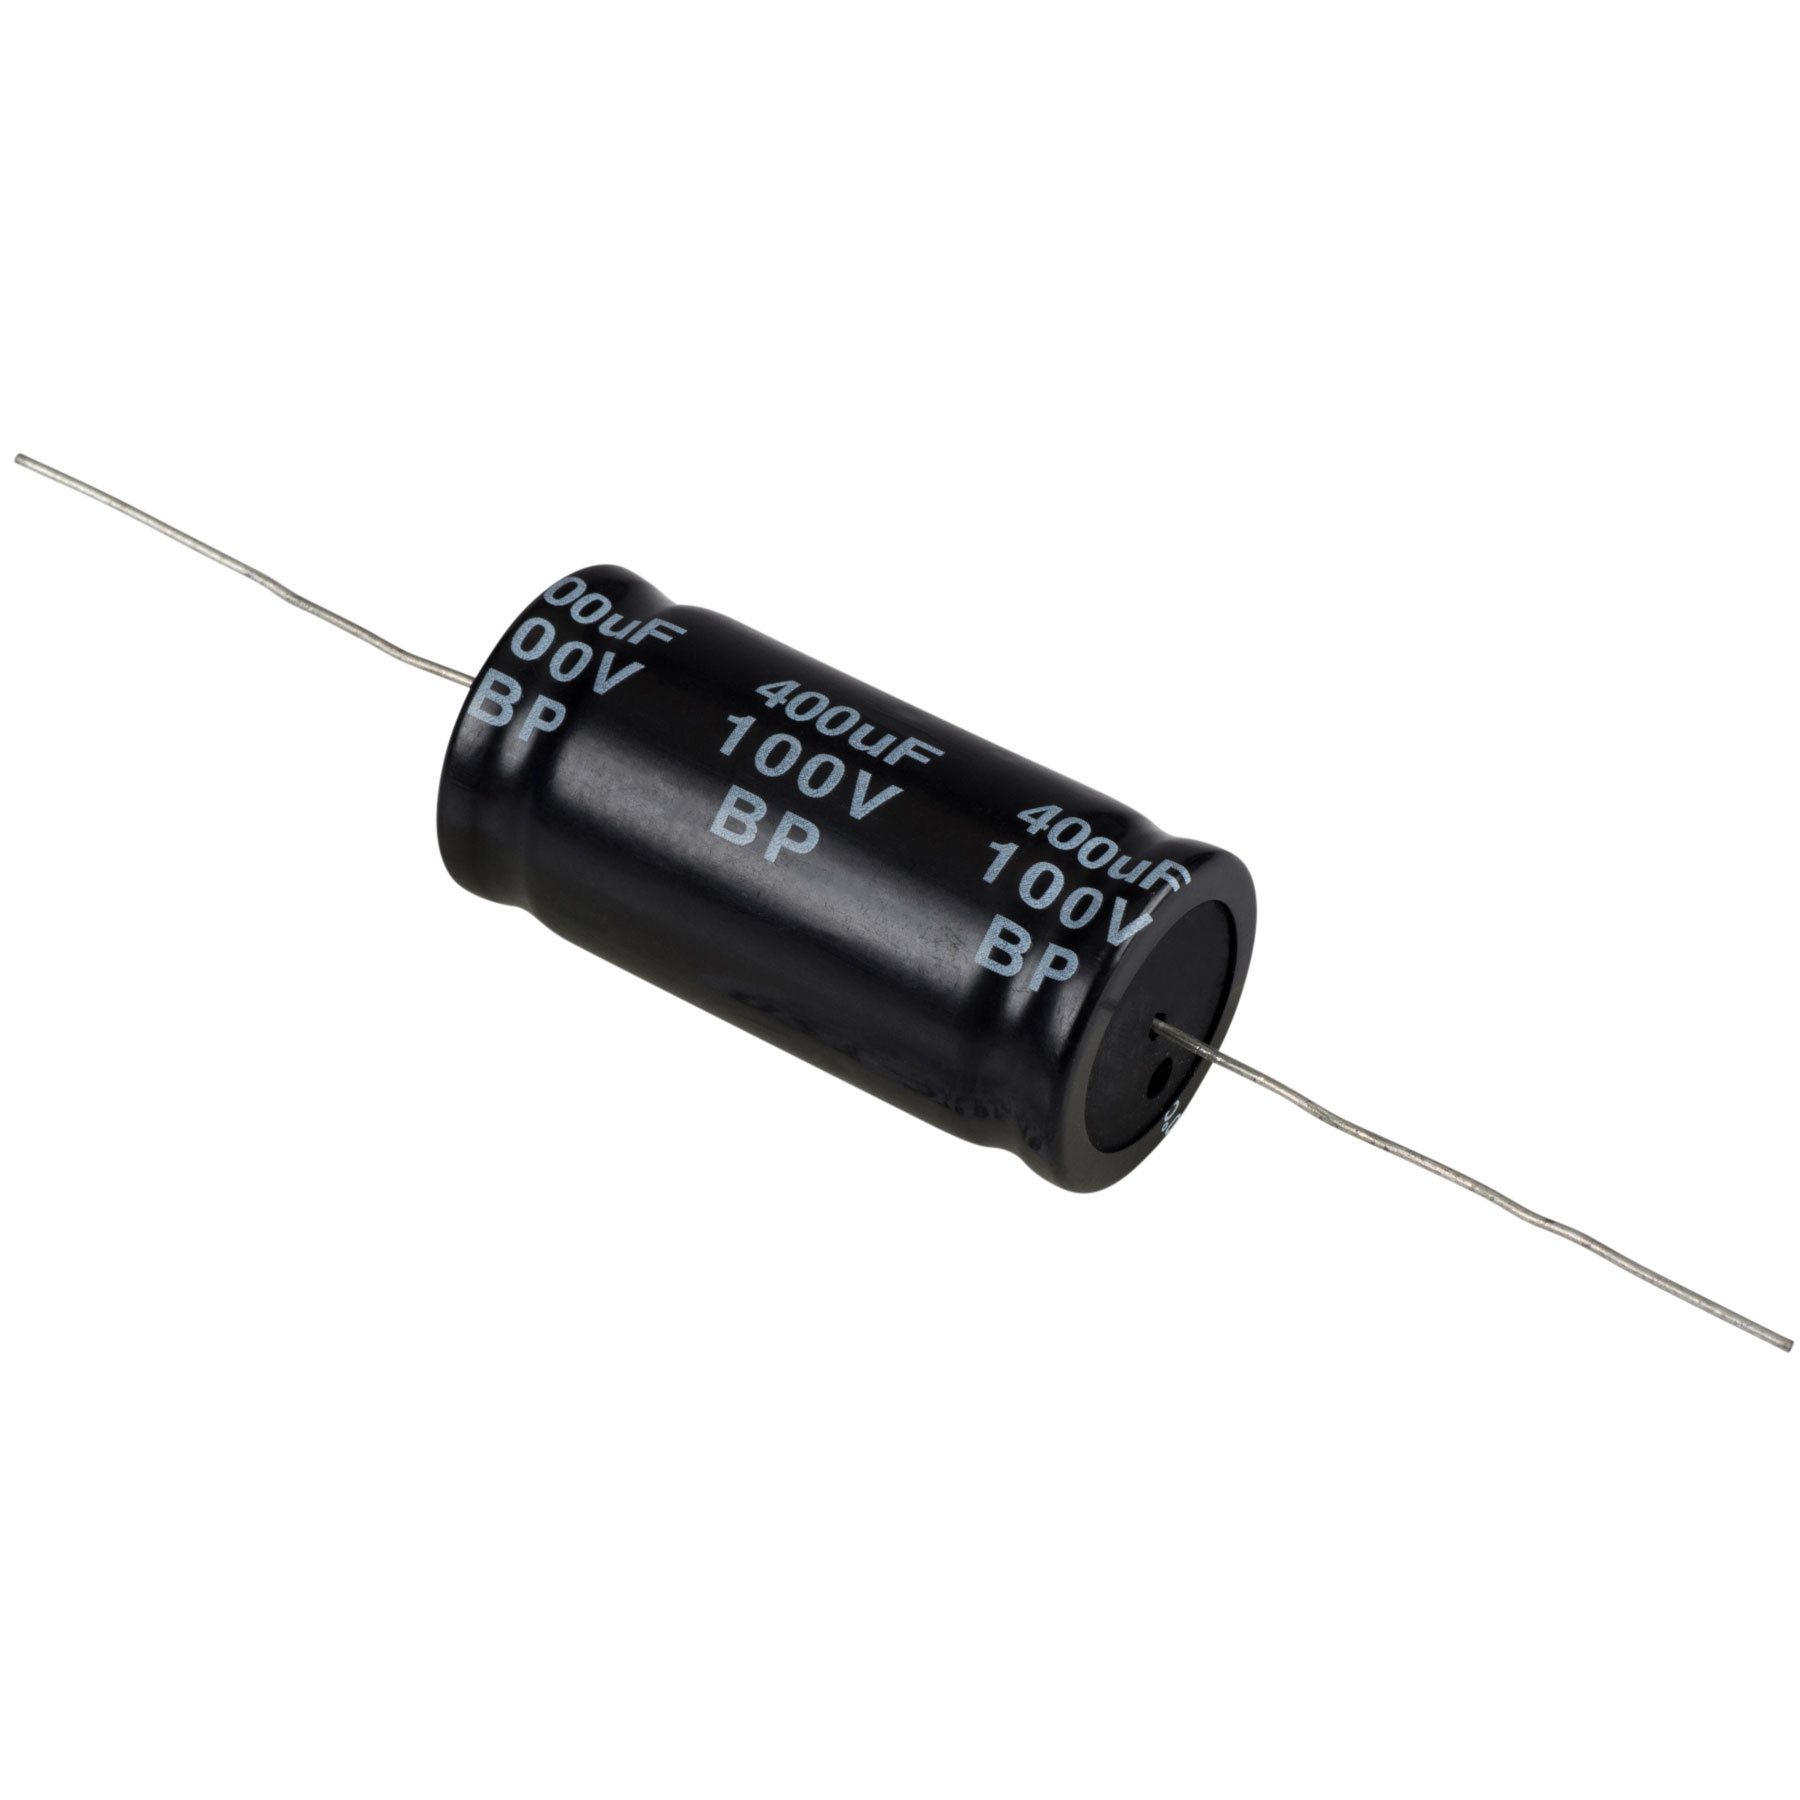 Condensatoare - Condensator electrolitic bipolar 400 µF | 10% | 100 V, audioclub.ro